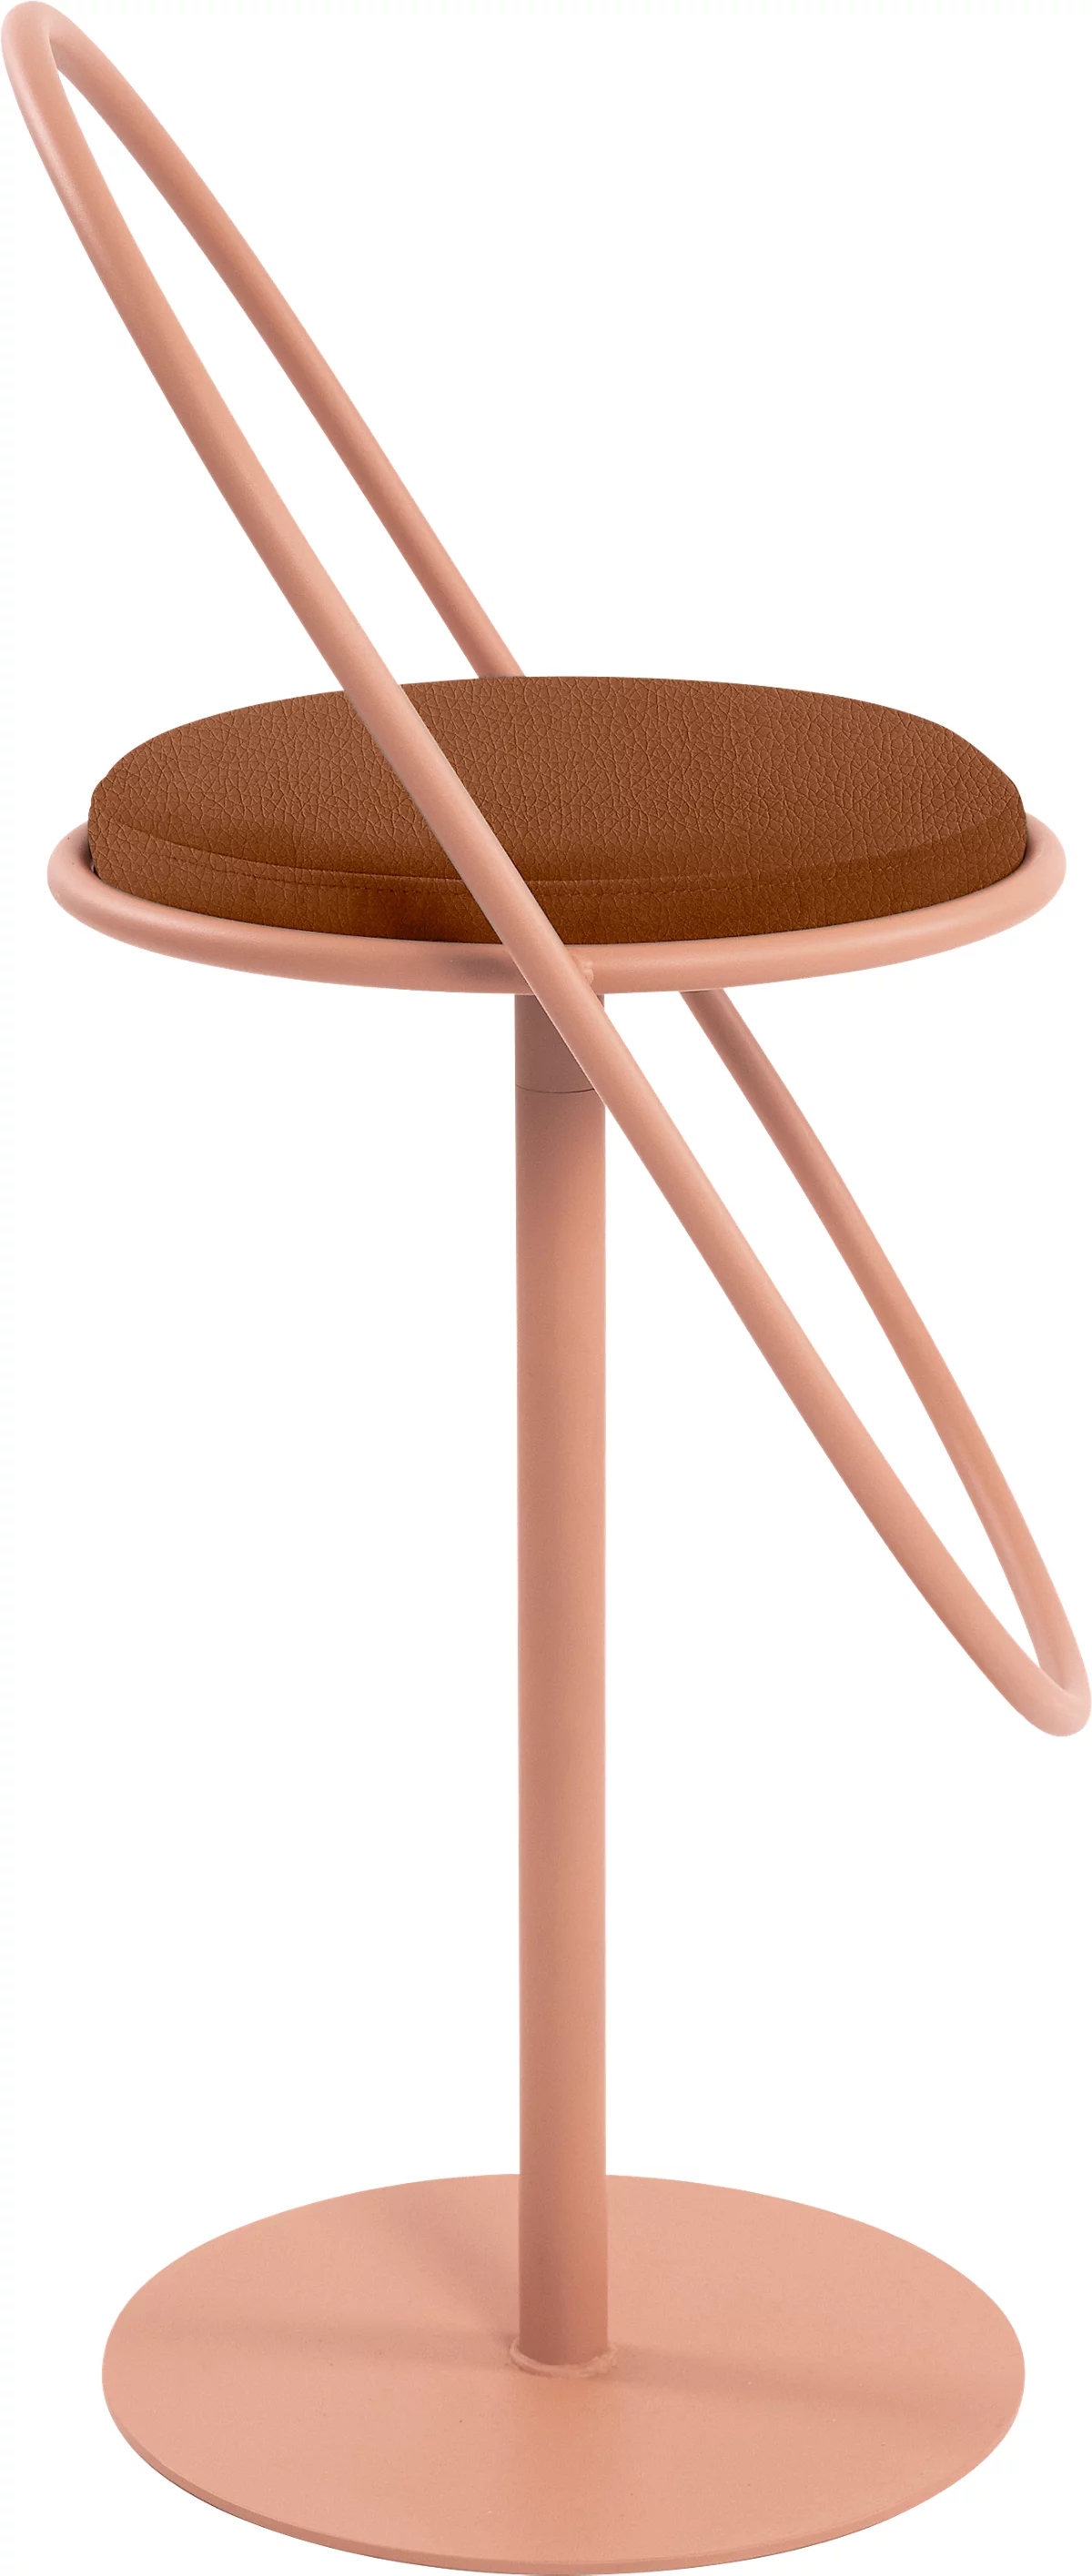 Barhocker Paperflow Saturne, mit Rückenlehne, Sitzhöhe 765 mm, gepolstert, zu 100 % recycelbar, Kunstlederbezug rostfarben, Gestell rosa